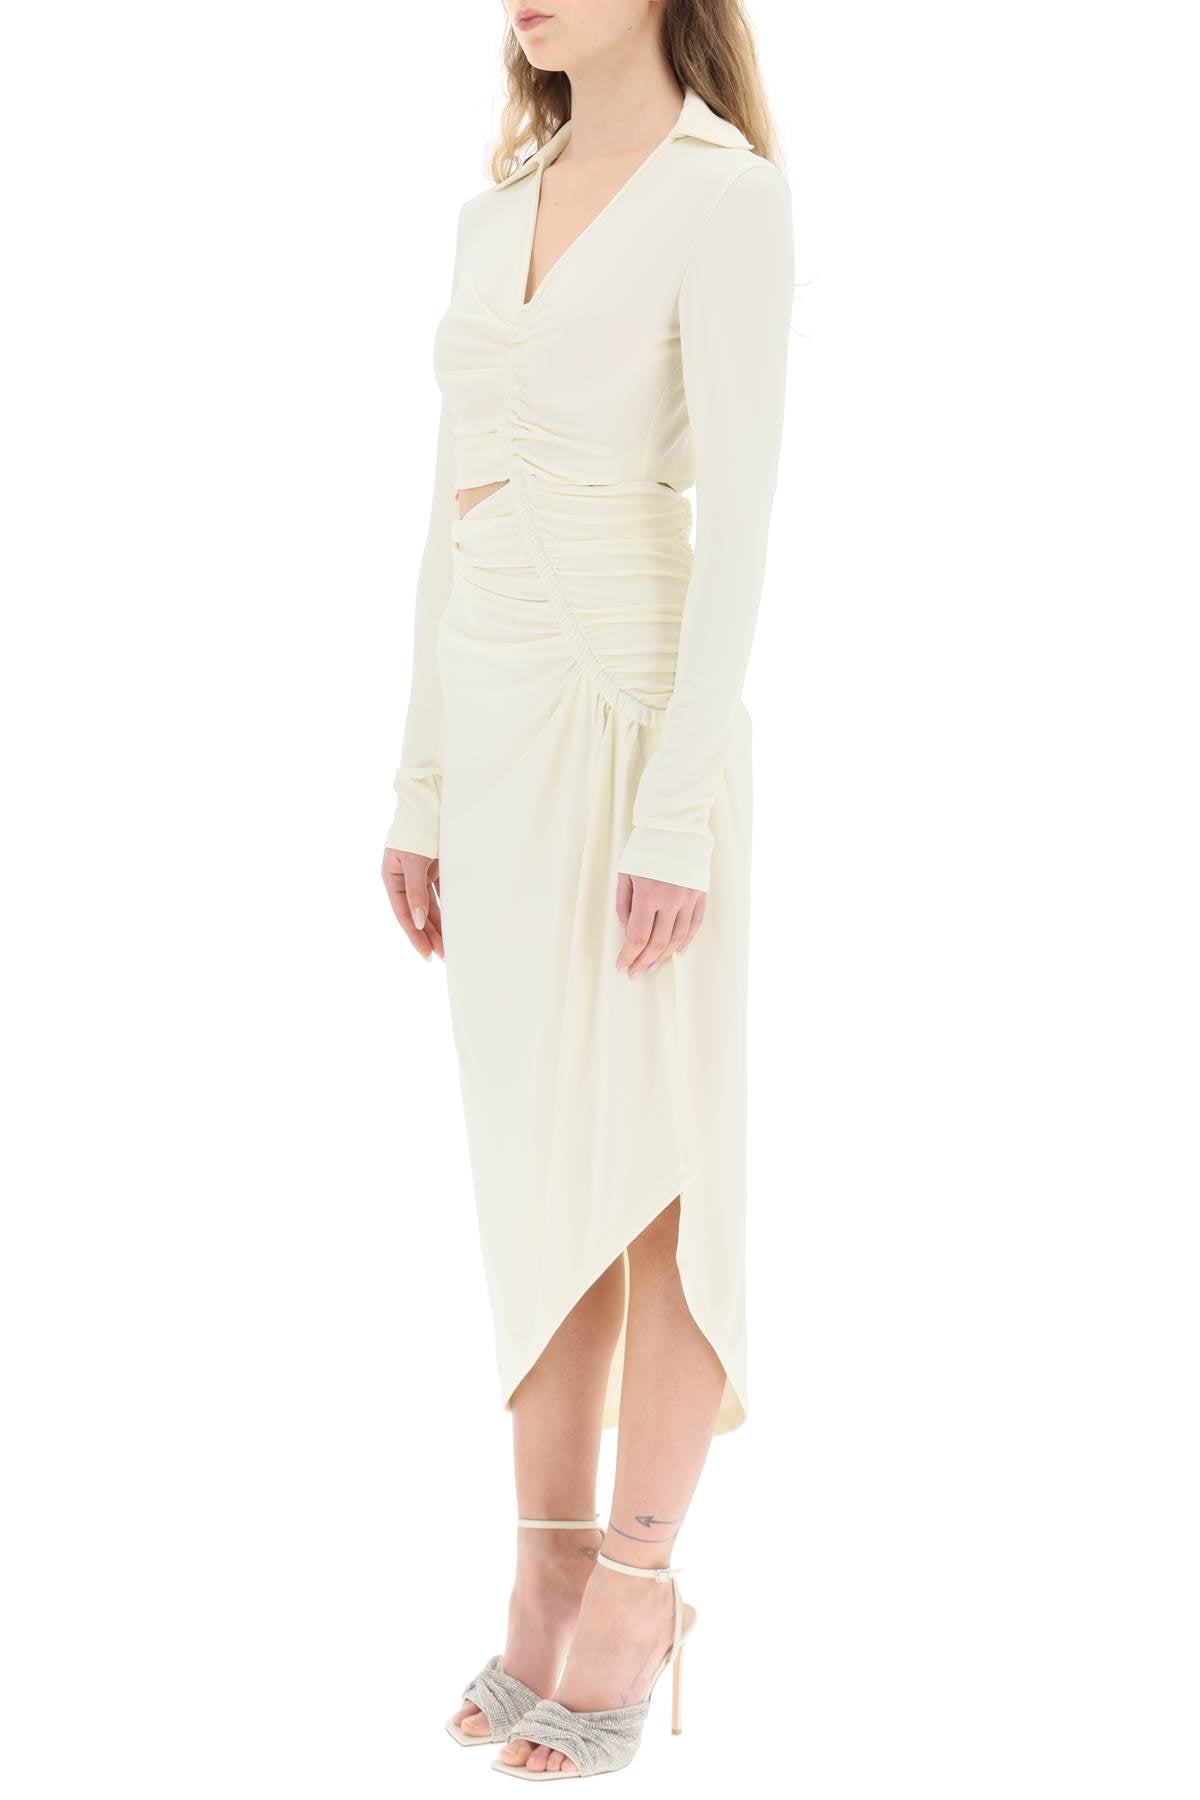 Shop Off-white Asymmetric Cut-out Jersey Dress Women